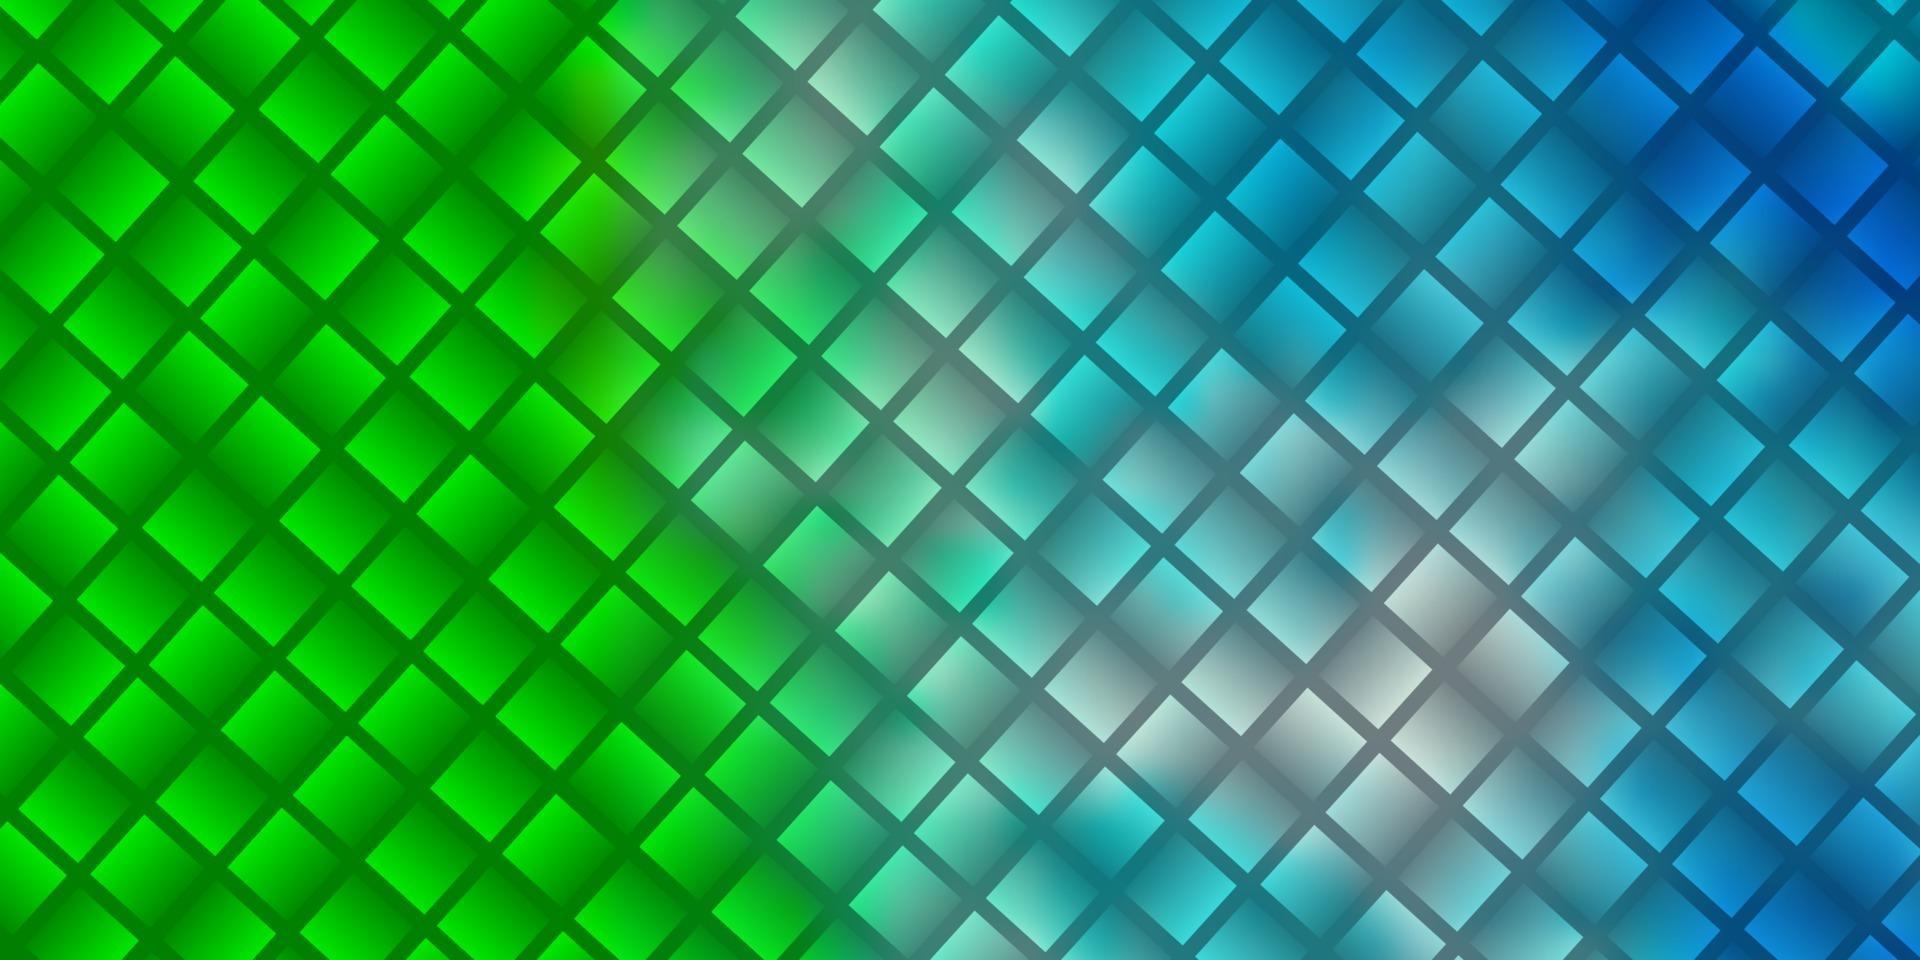 ljusblå, grön vektormall med rektanglar. vektor